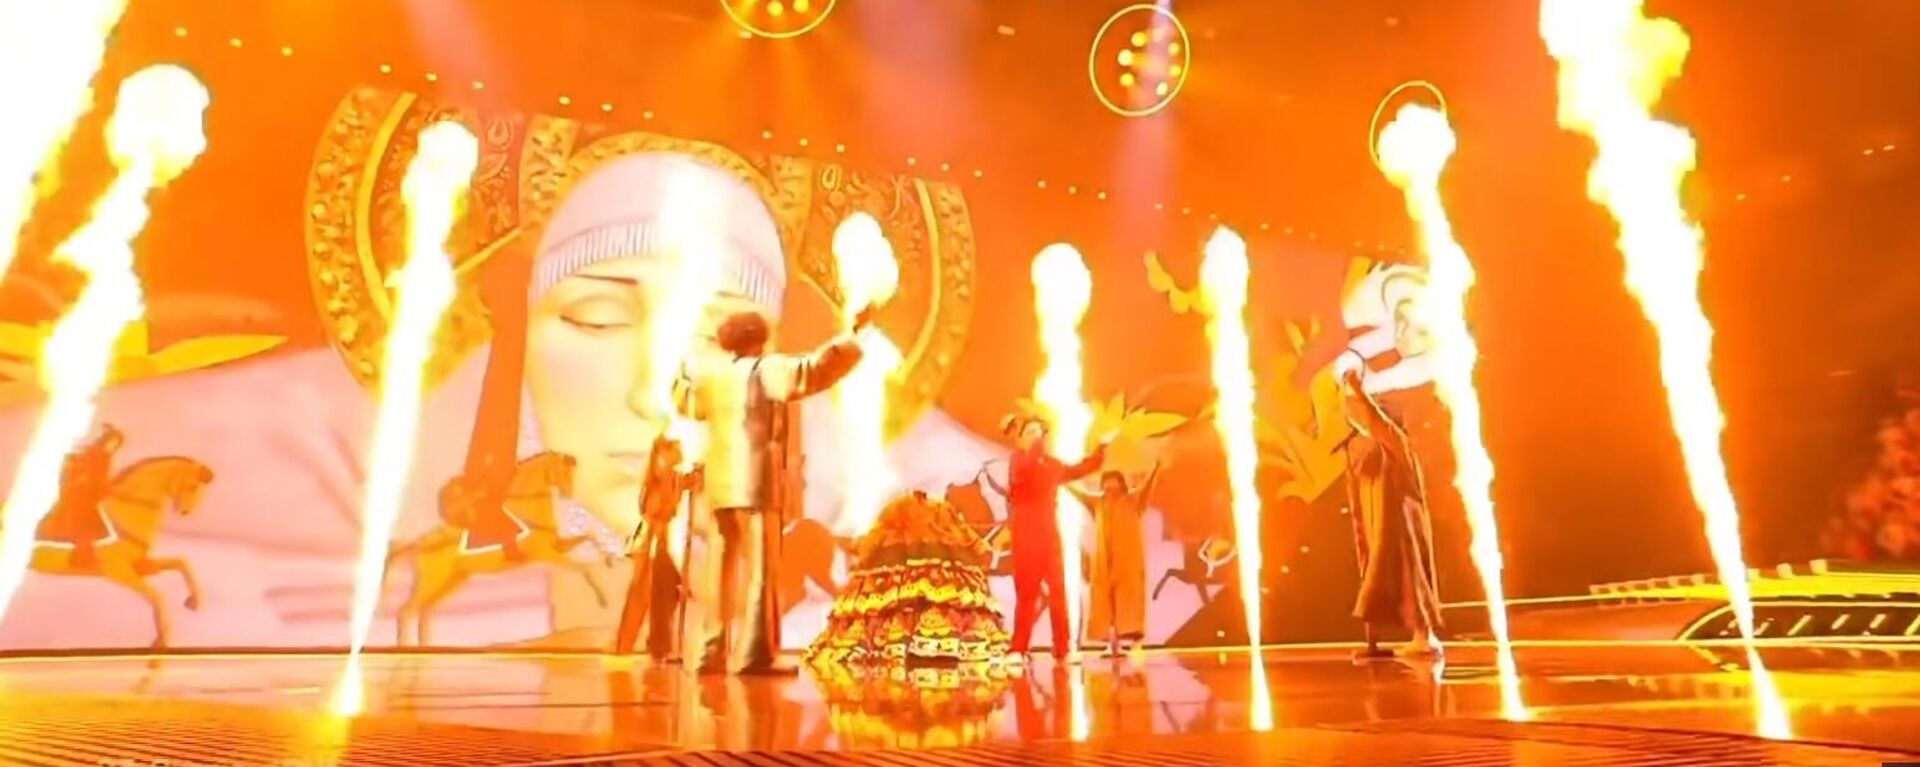 Видео выступления Манижи на Евровидении-2021 набрало более 1,5 миллиона просмотров в YouTube - Sputnik Литва, 1920, 19.05.2021